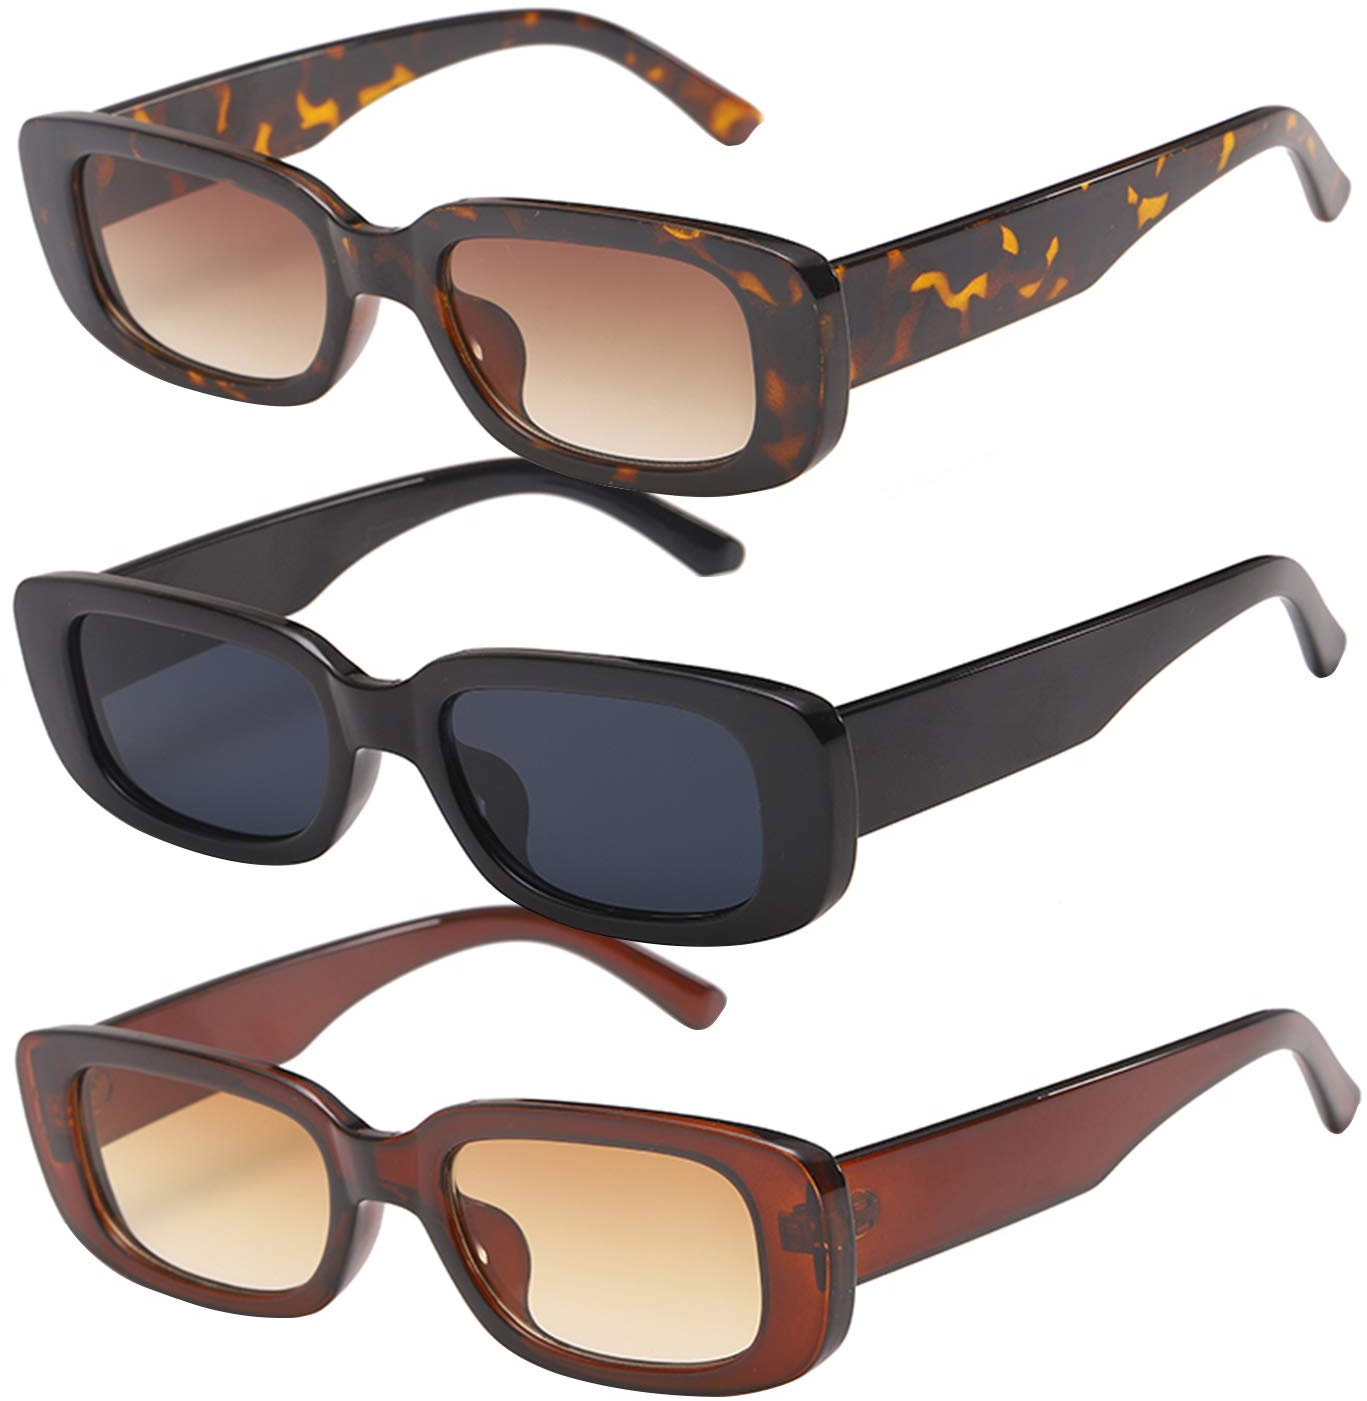 Lidiper 3 Stück Vintage Rechteckige Sonnenbrille für Damen, UV 400 Brille Retro Quadrat Brillen Mode Sonnenbrille für Reise, Fahren Angeln Reisen - 147*136*40mm